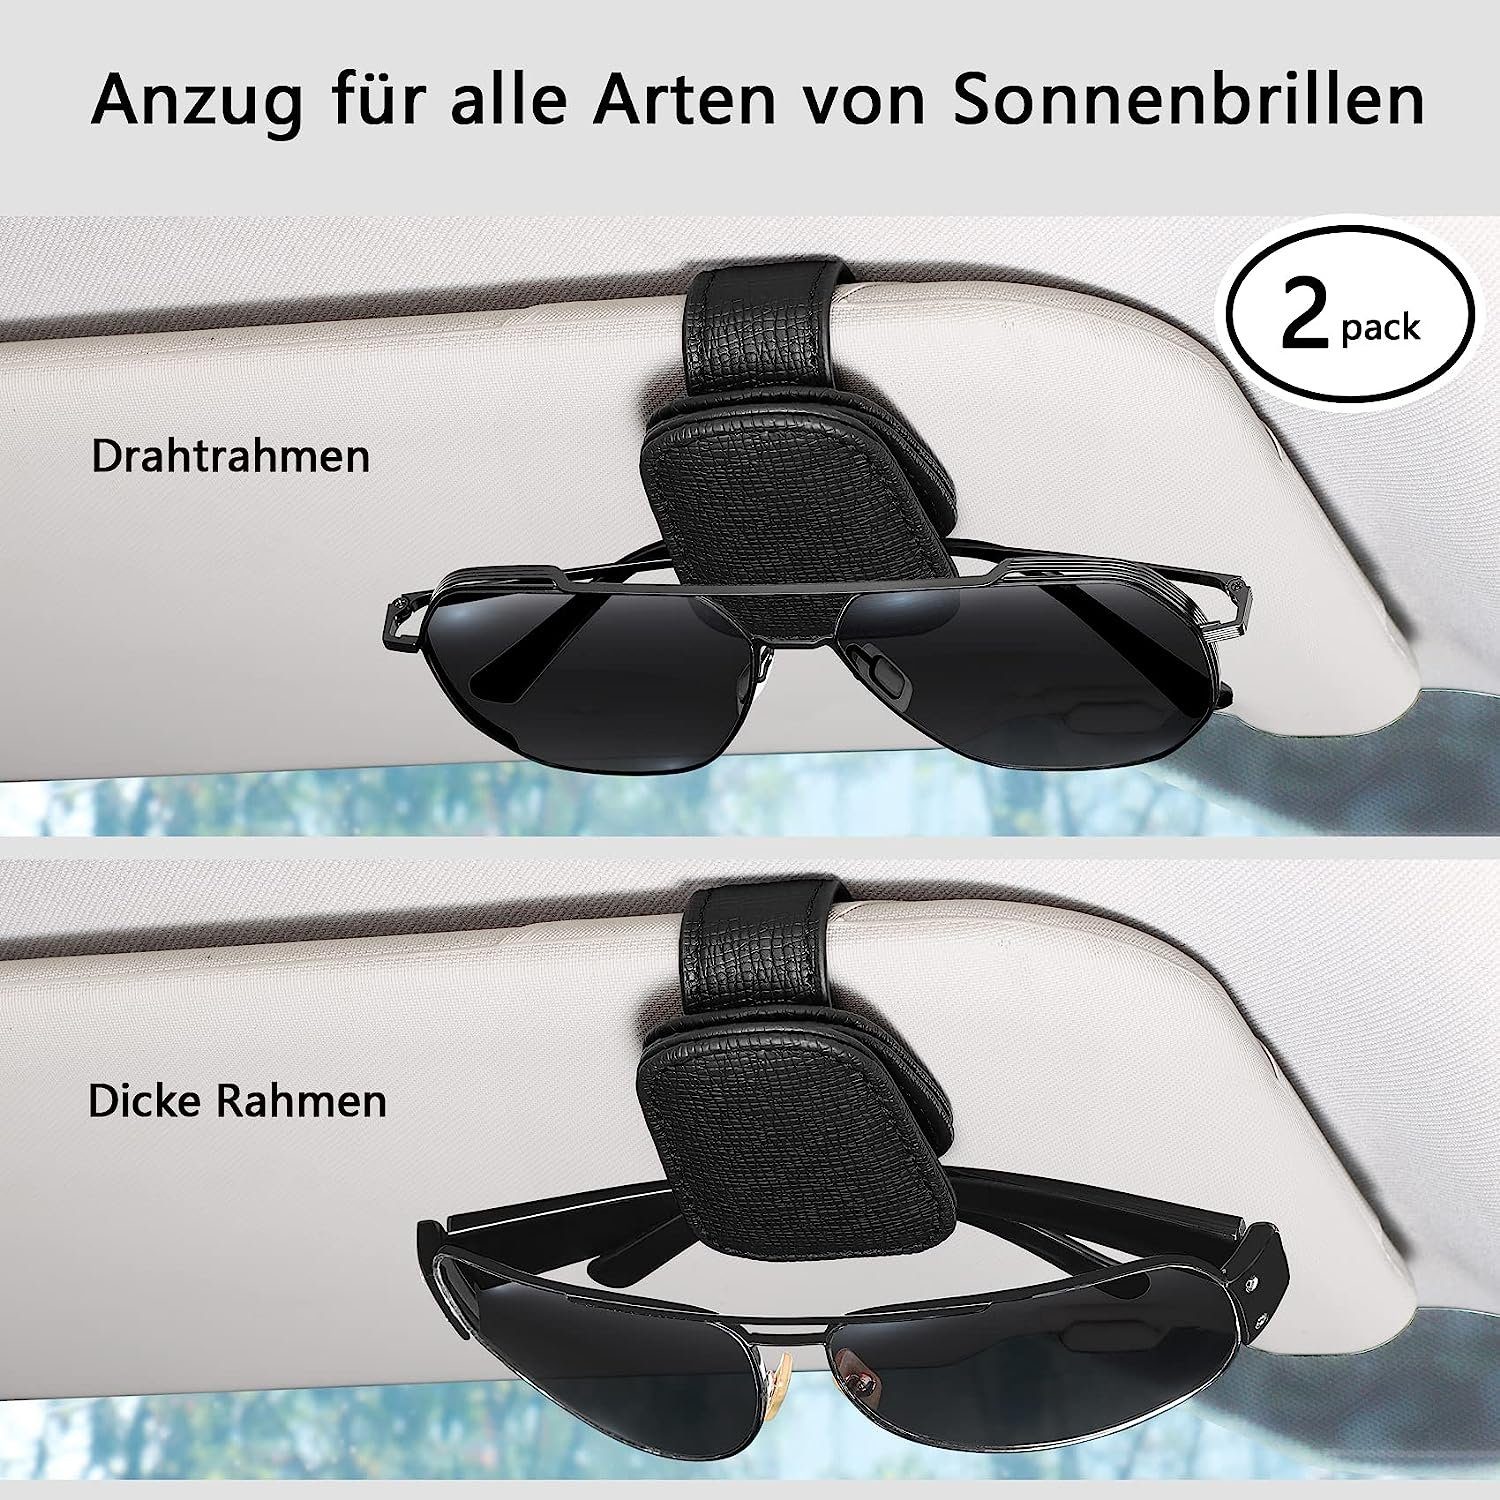 NUODWELL Autosonnenschutz 2 Schwarz Pack Sonnenbrillenhalterung Auto Brillenhalter Visier Sonnenblende